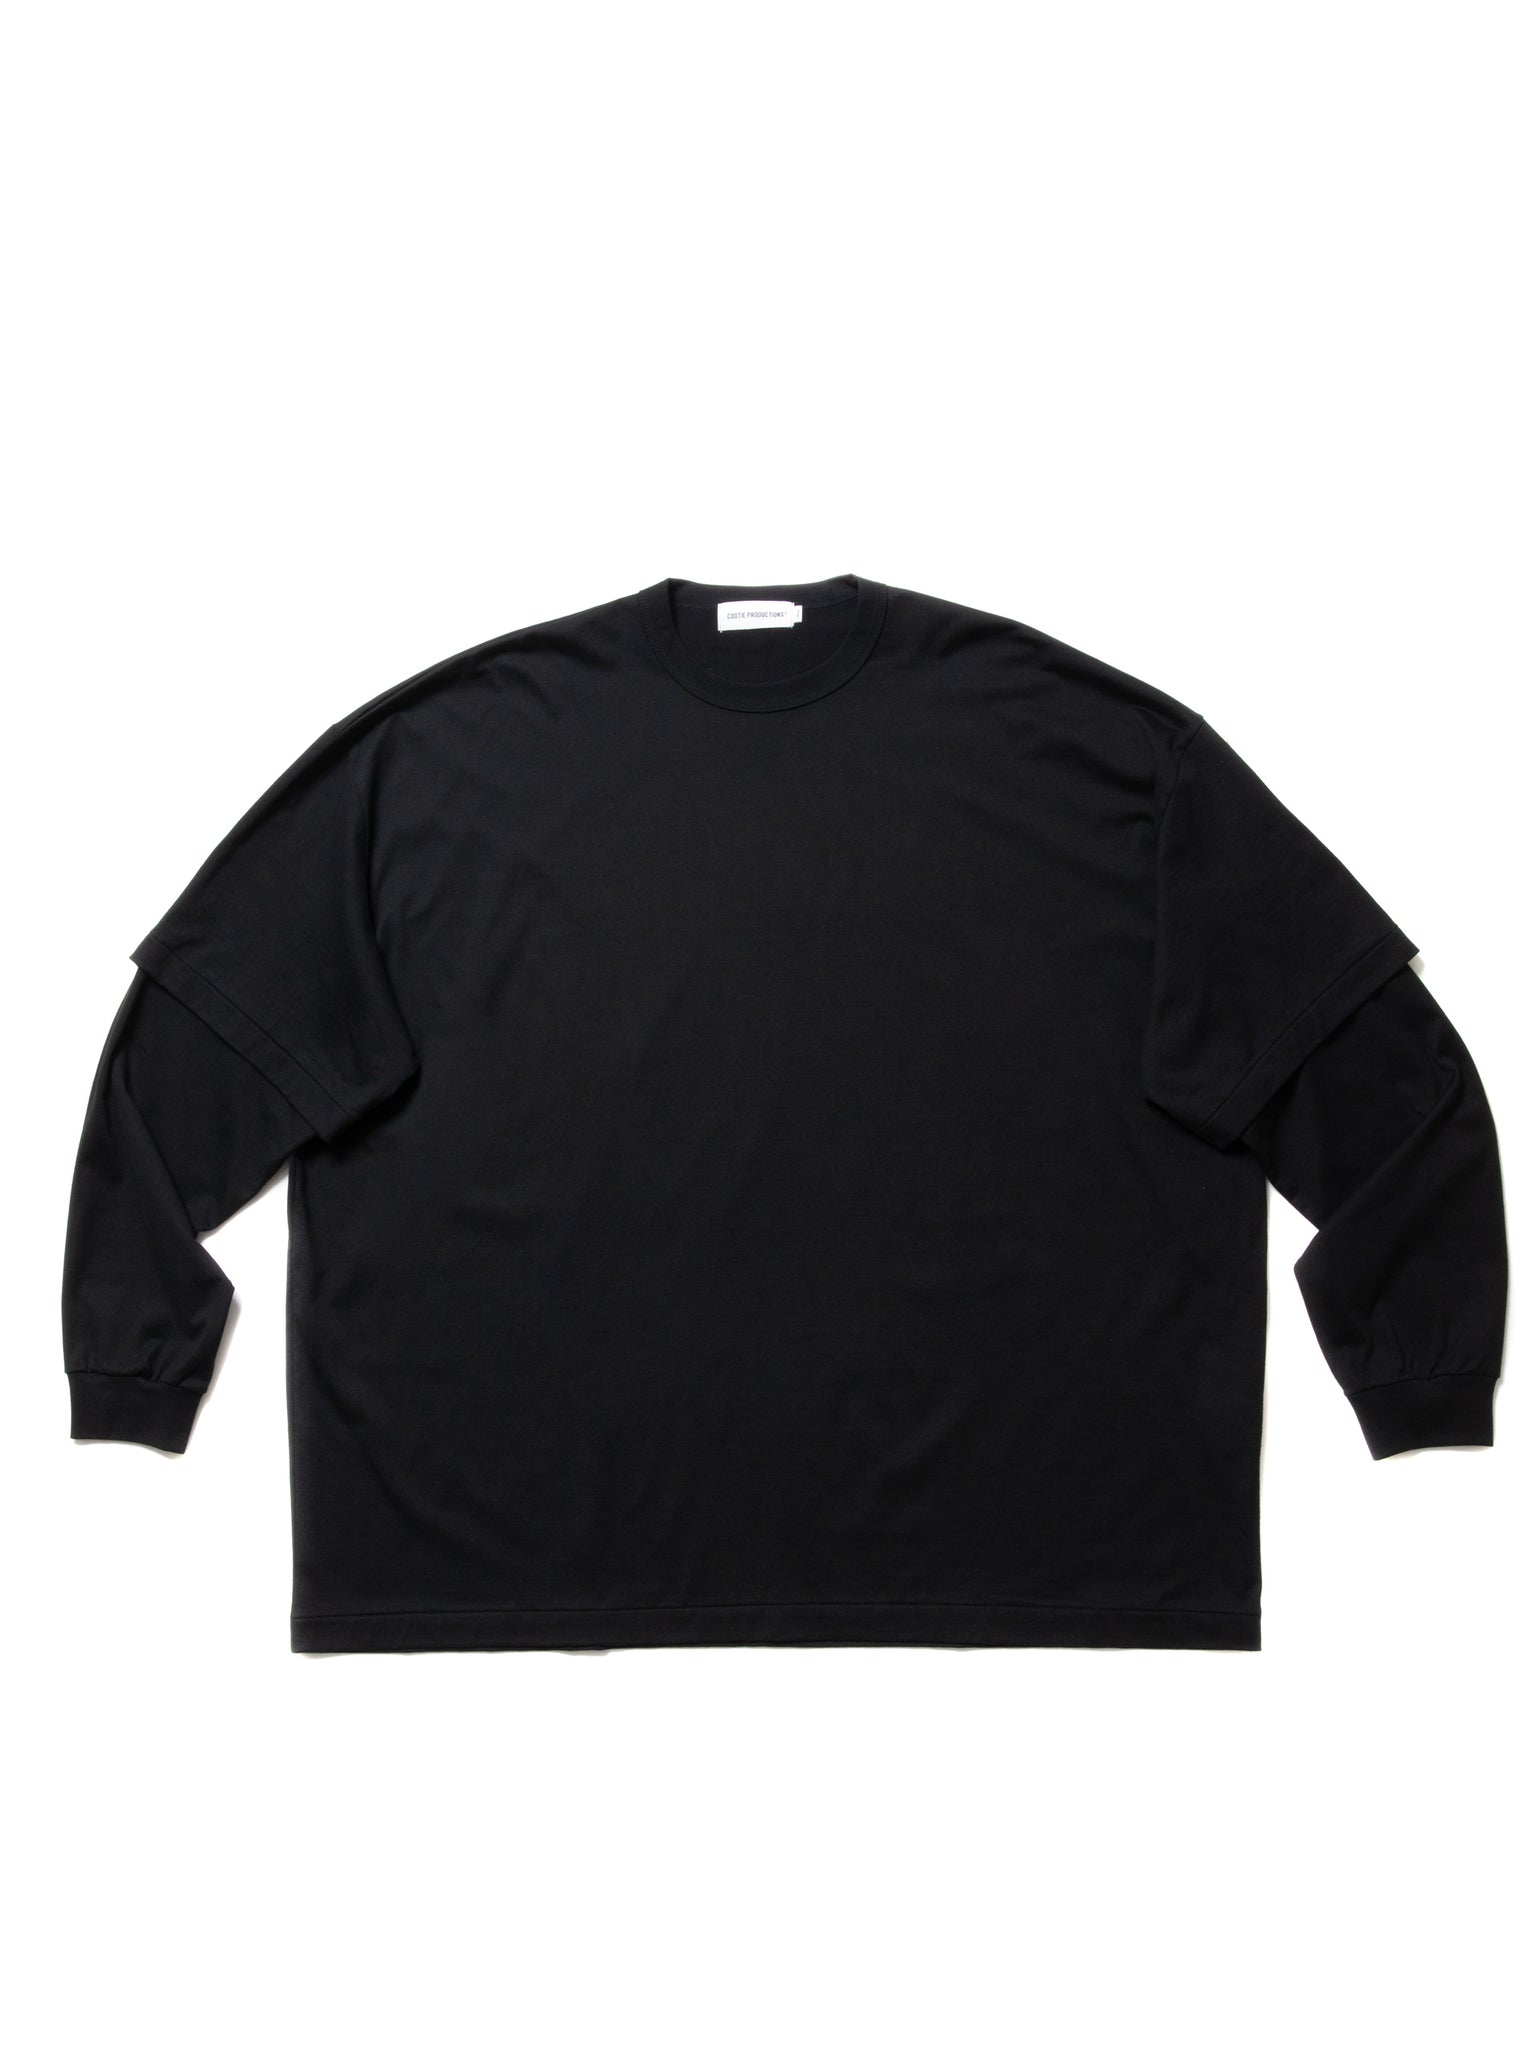 Interlocking G jersey crop top in black - Gucci